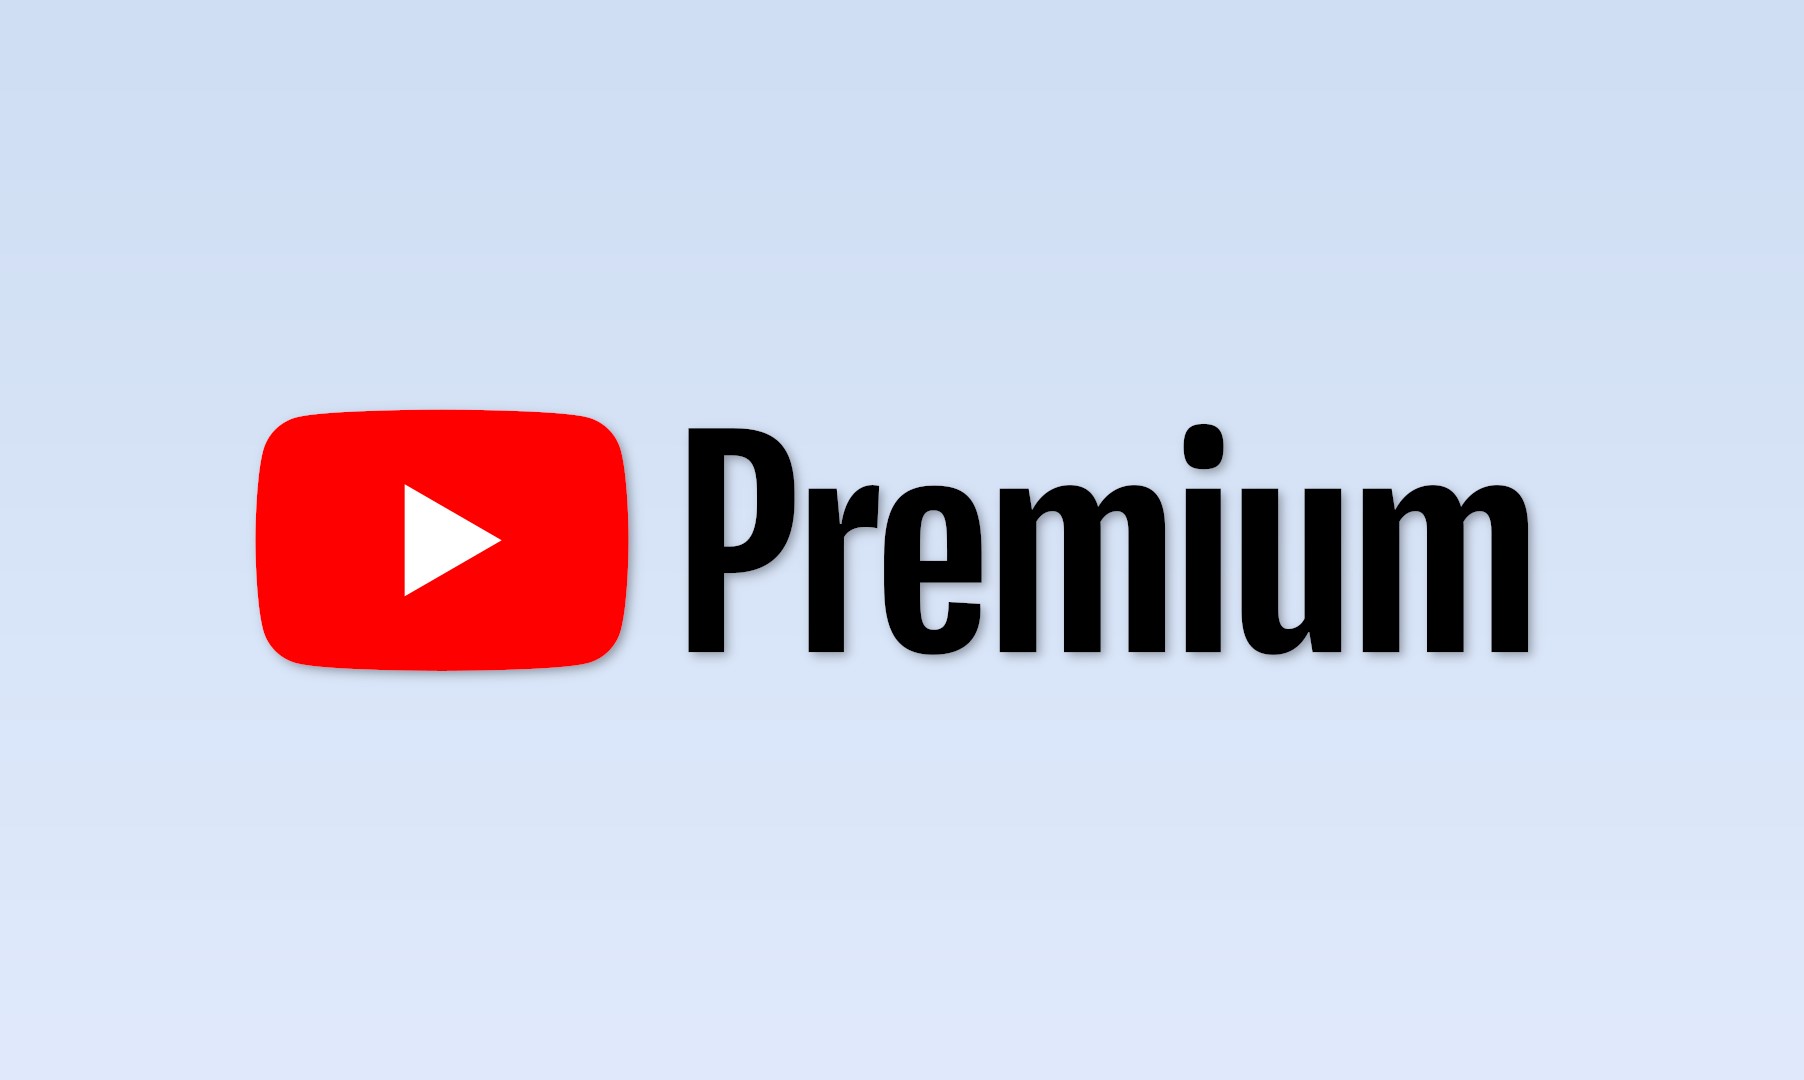 YouTube Премиум позволяет скачивать видео более высокого качества